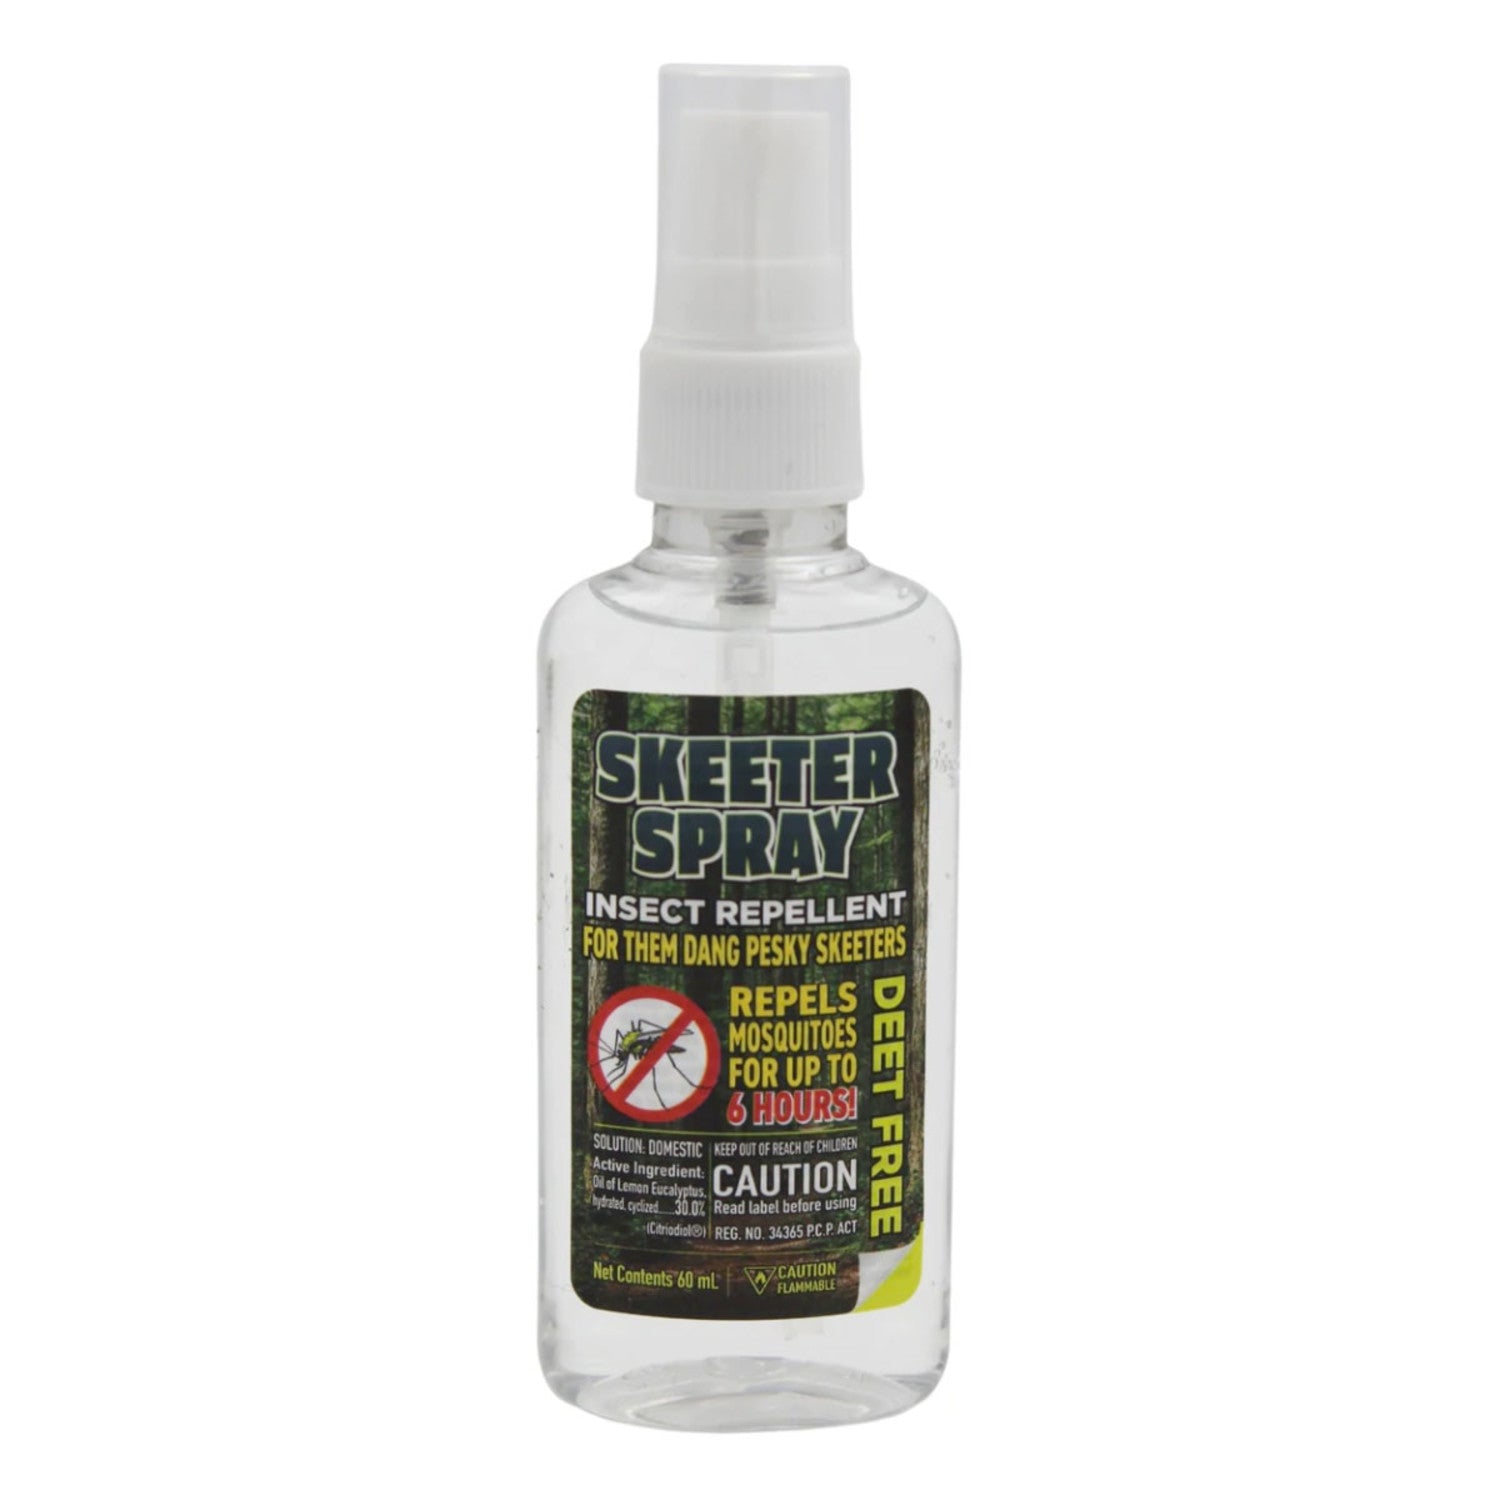 all clean natural - 2oz - 60ml - deet free skeeter spray – Vested